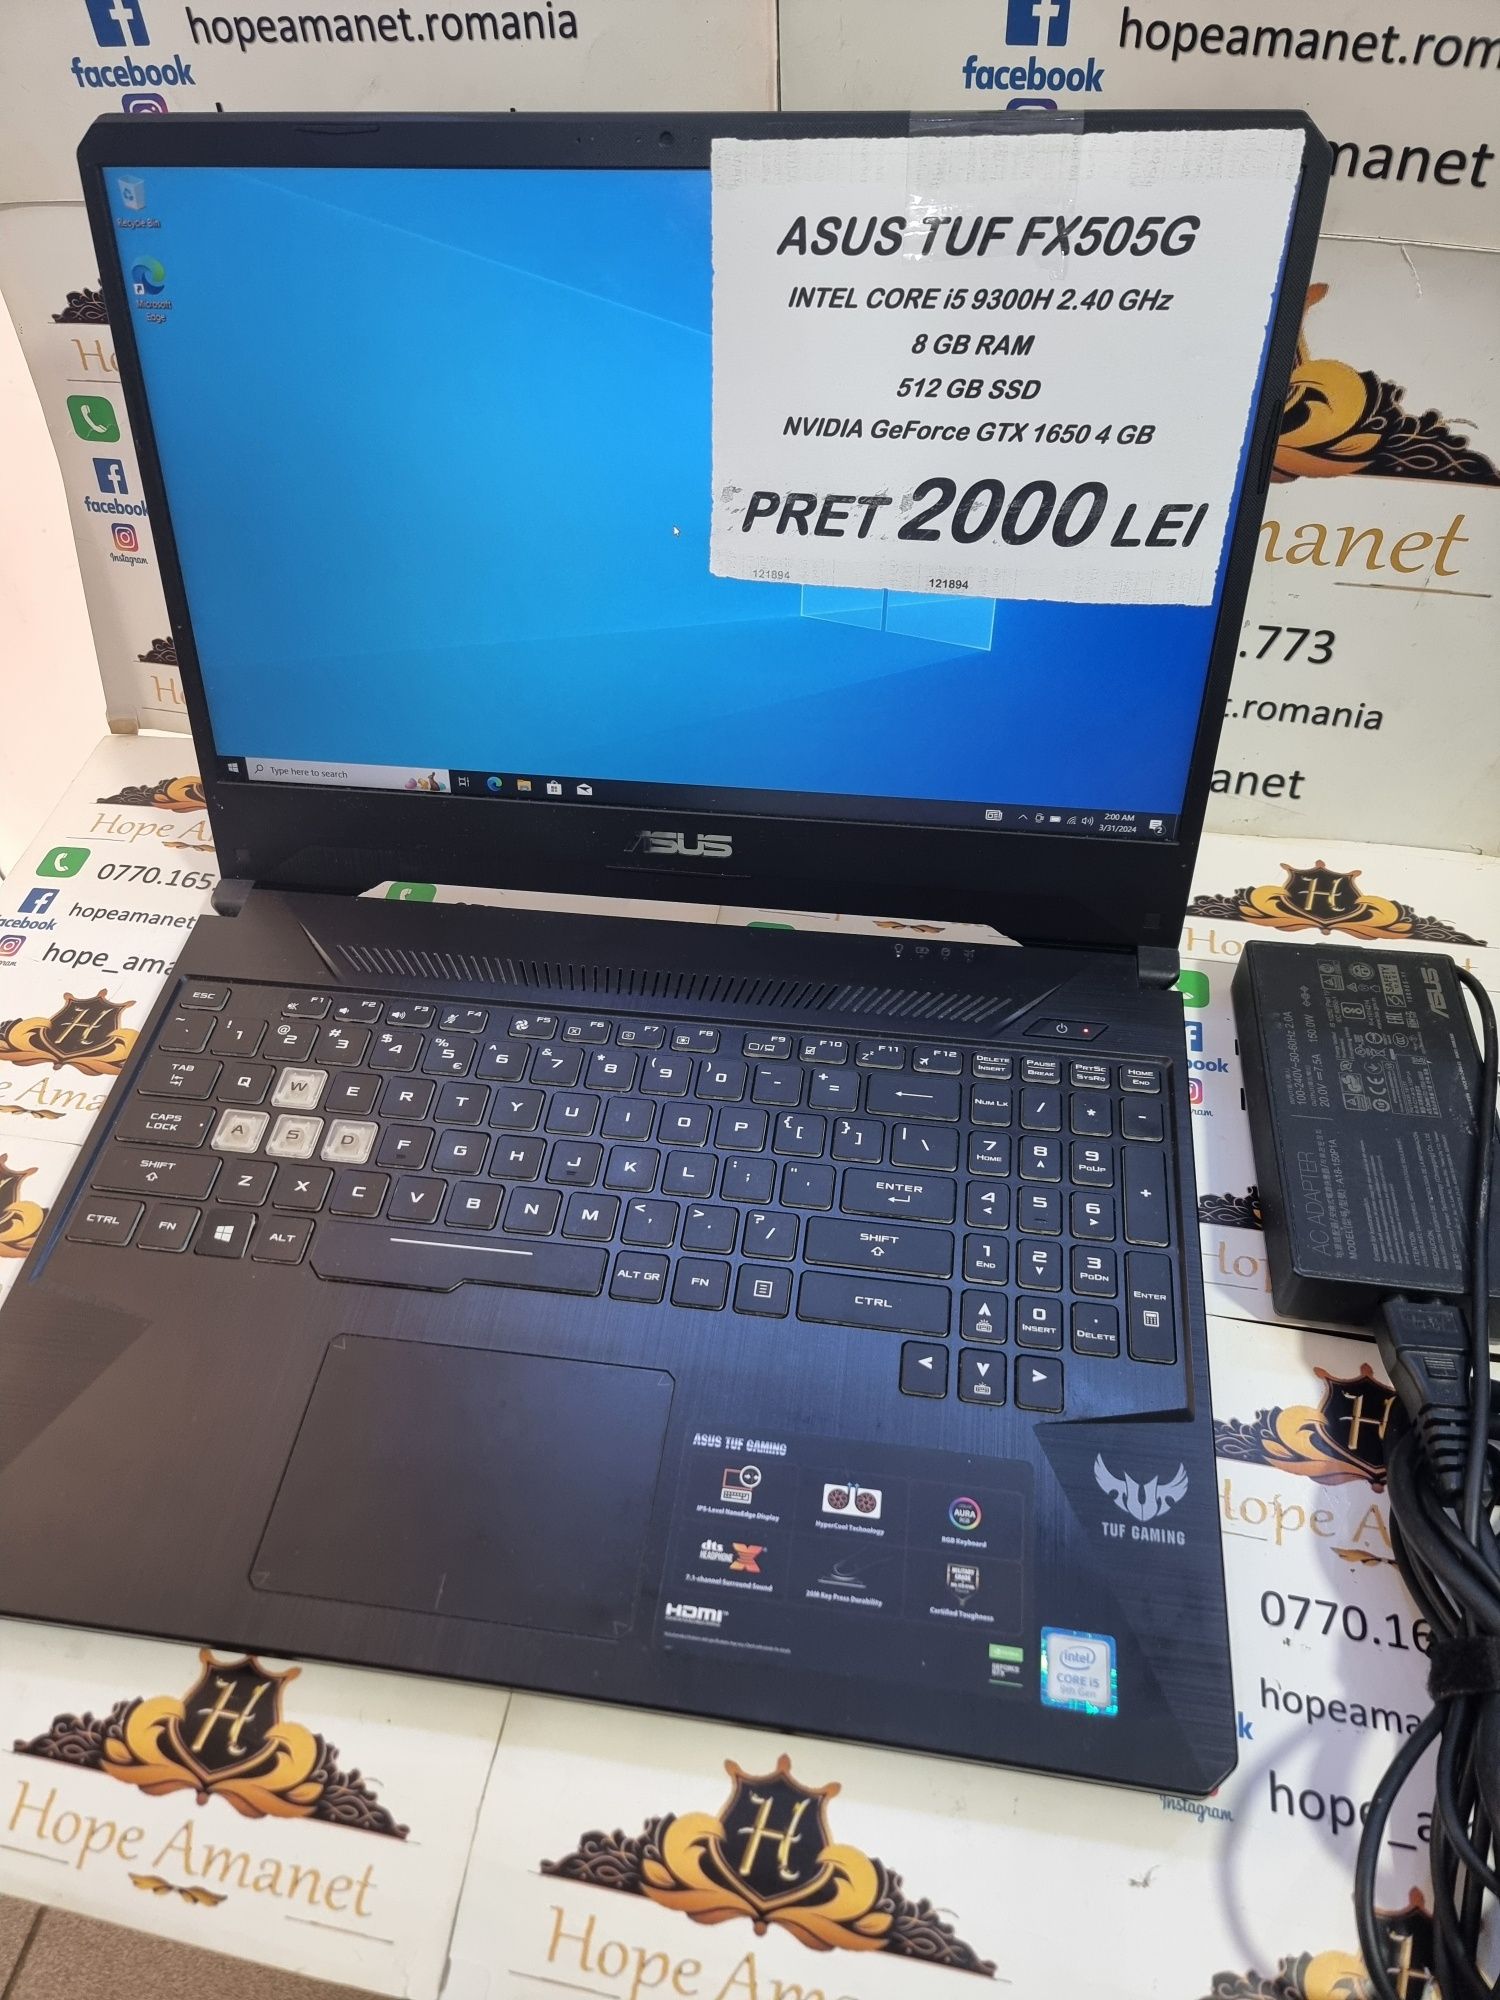 Hope Amanet P6 Laptop Asus TUF FX505G